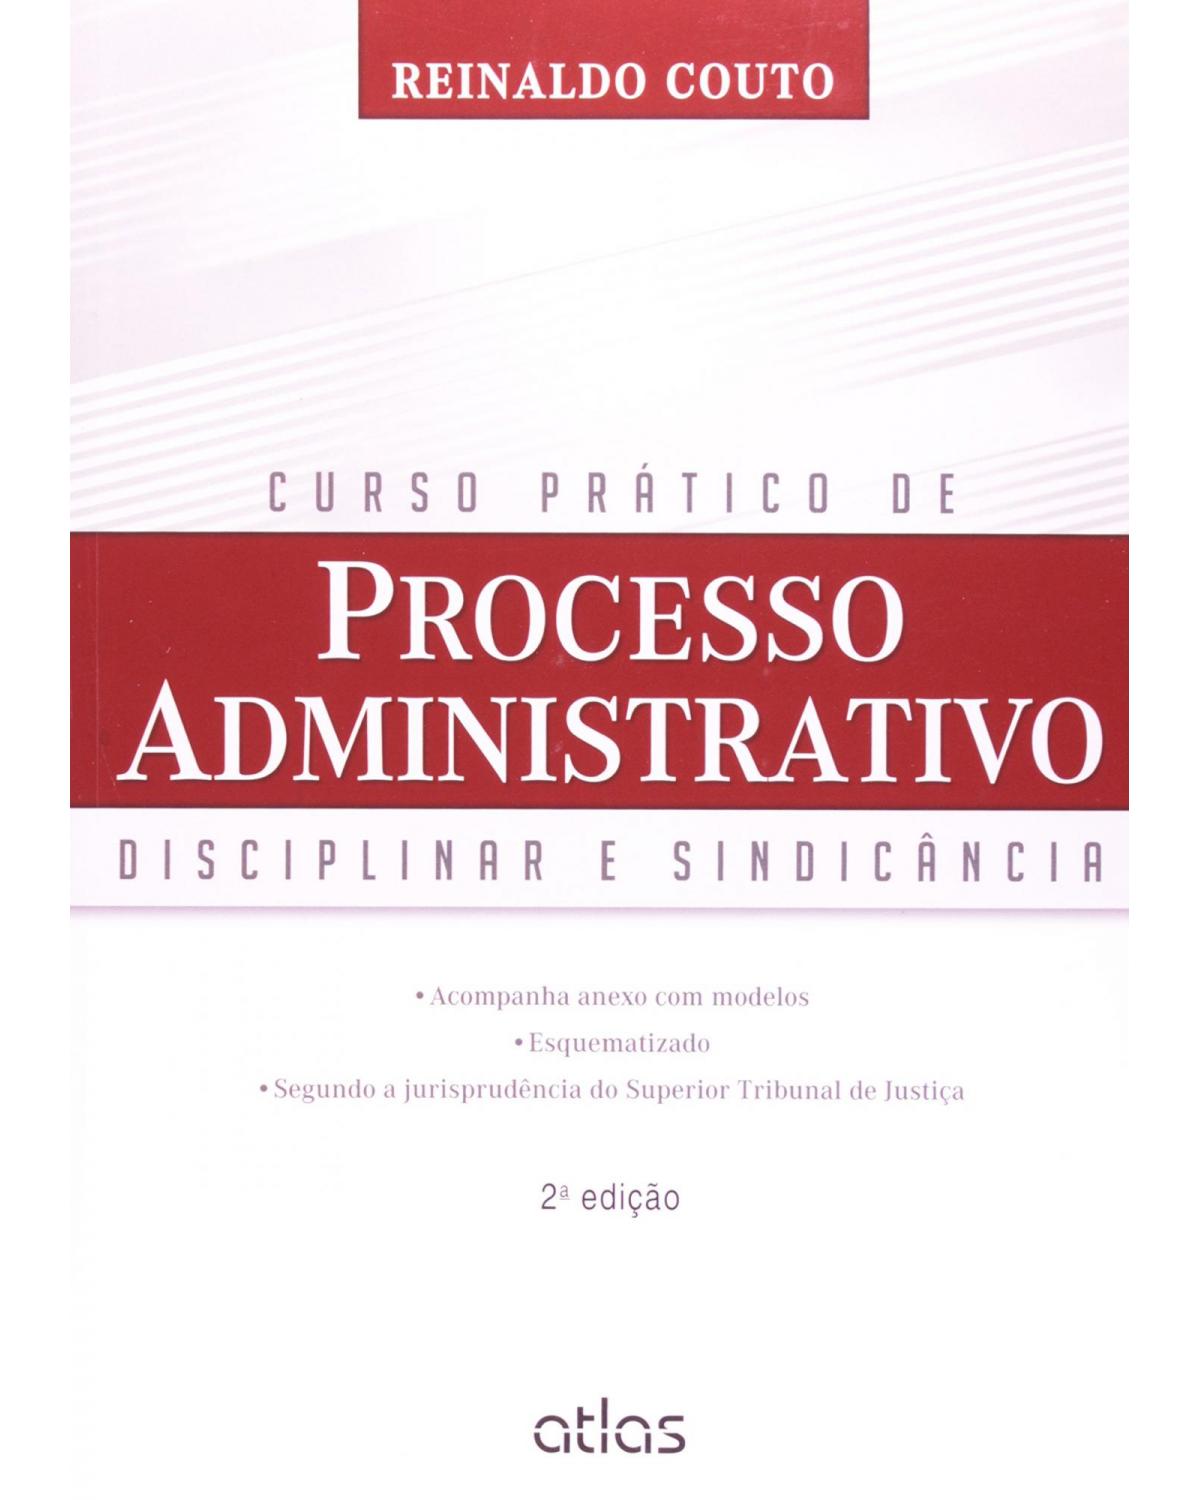 Curso prático de processo administrativo - Disciplinar e sindicância - 2ª Edição | 2014